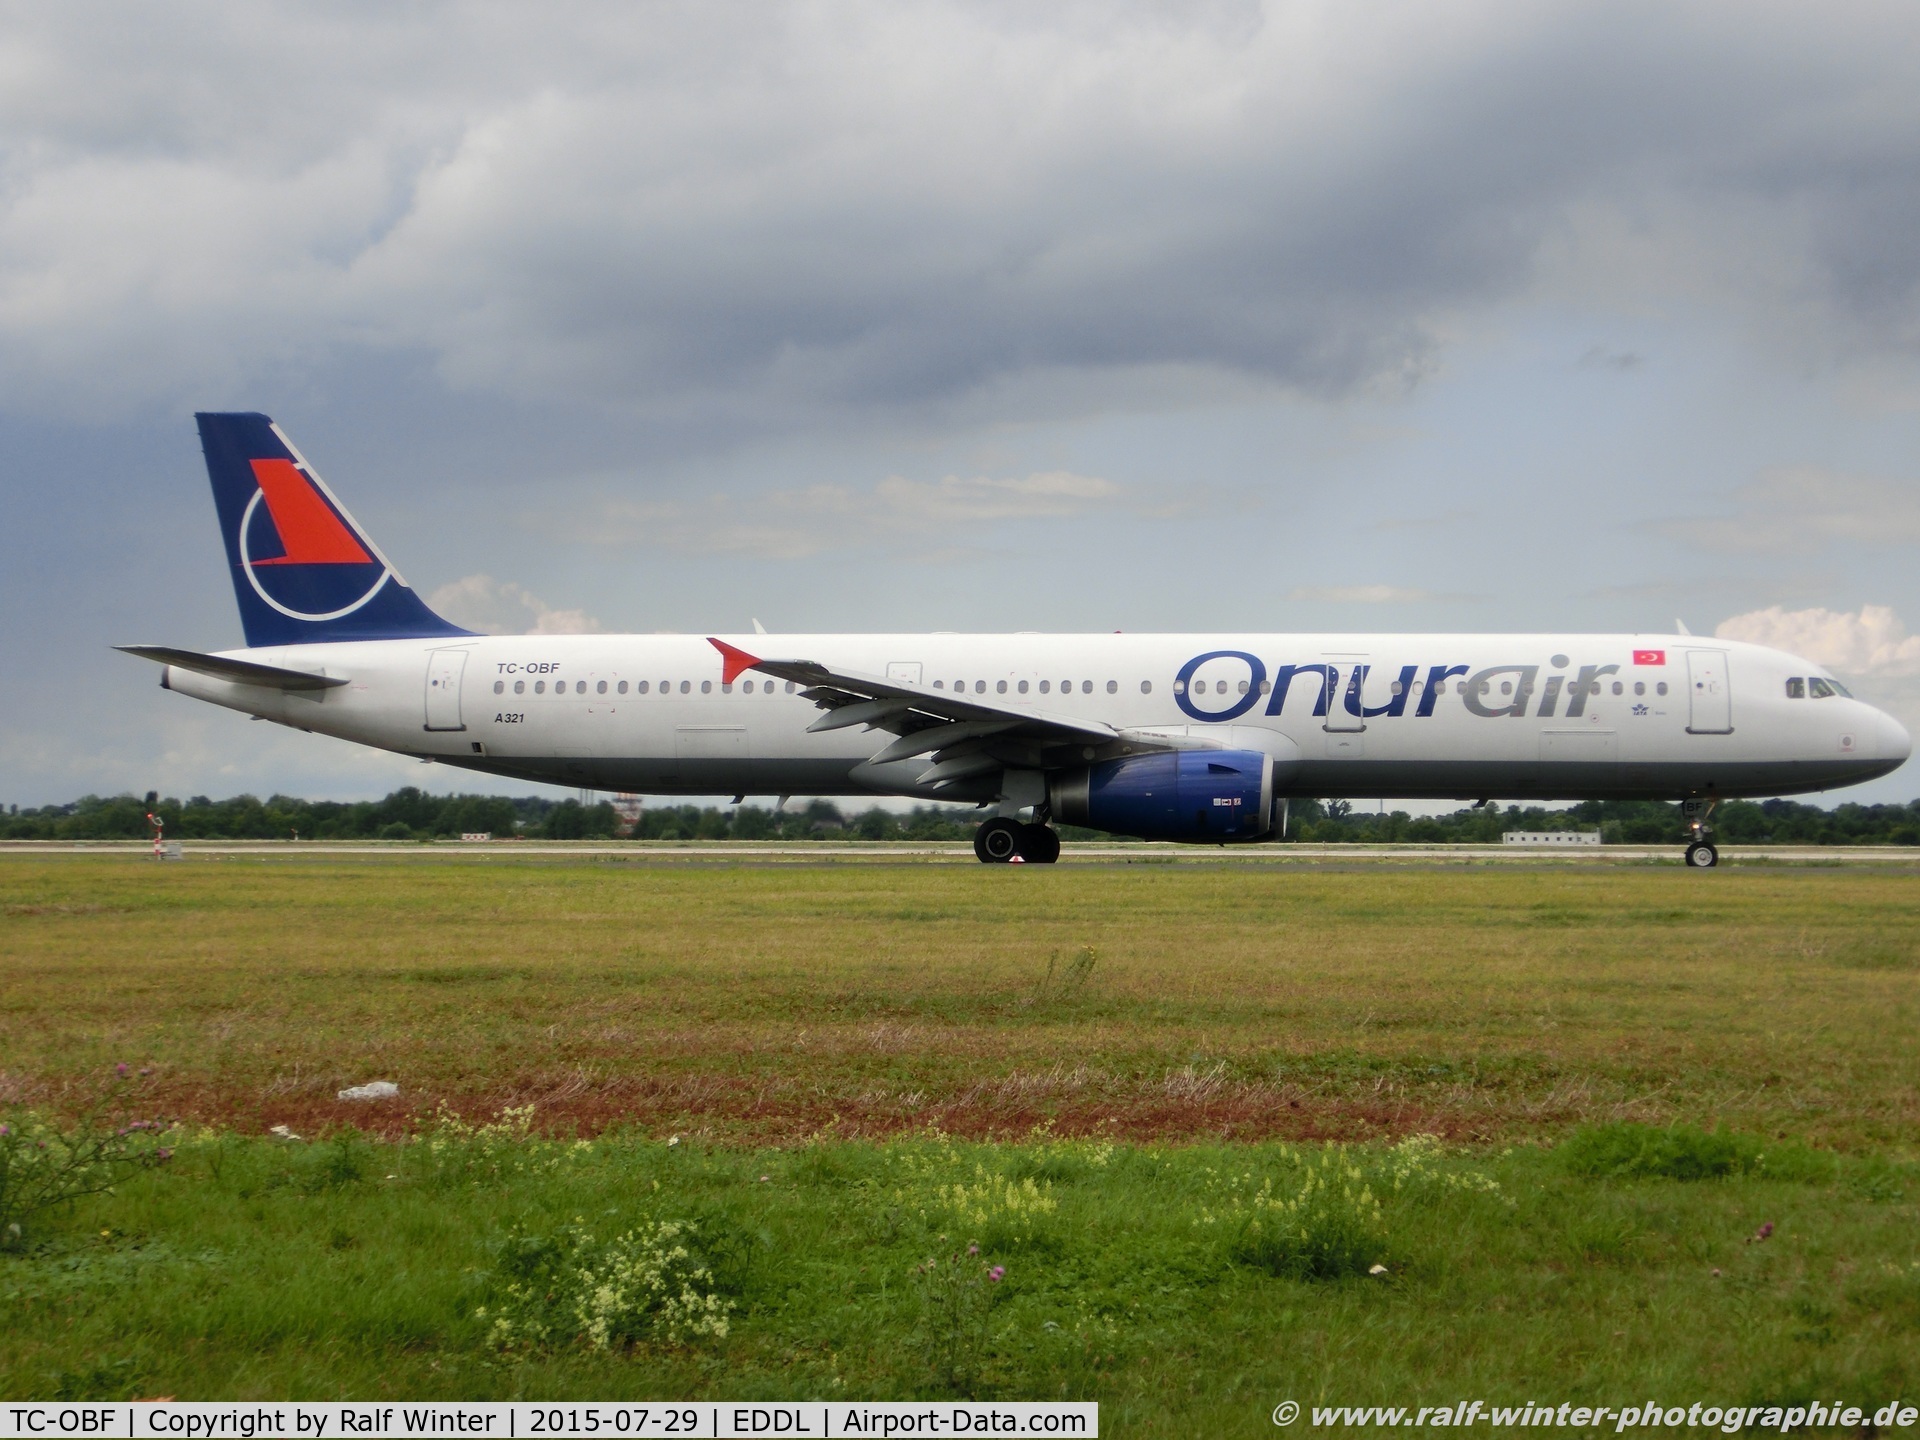 TC-OBF, 1999 Airbus A321-131 C/N 963, Airbus A321-231 - 8Q OHY Onur Air - 963 - TC-OBF - 29.07.2015 - DUS